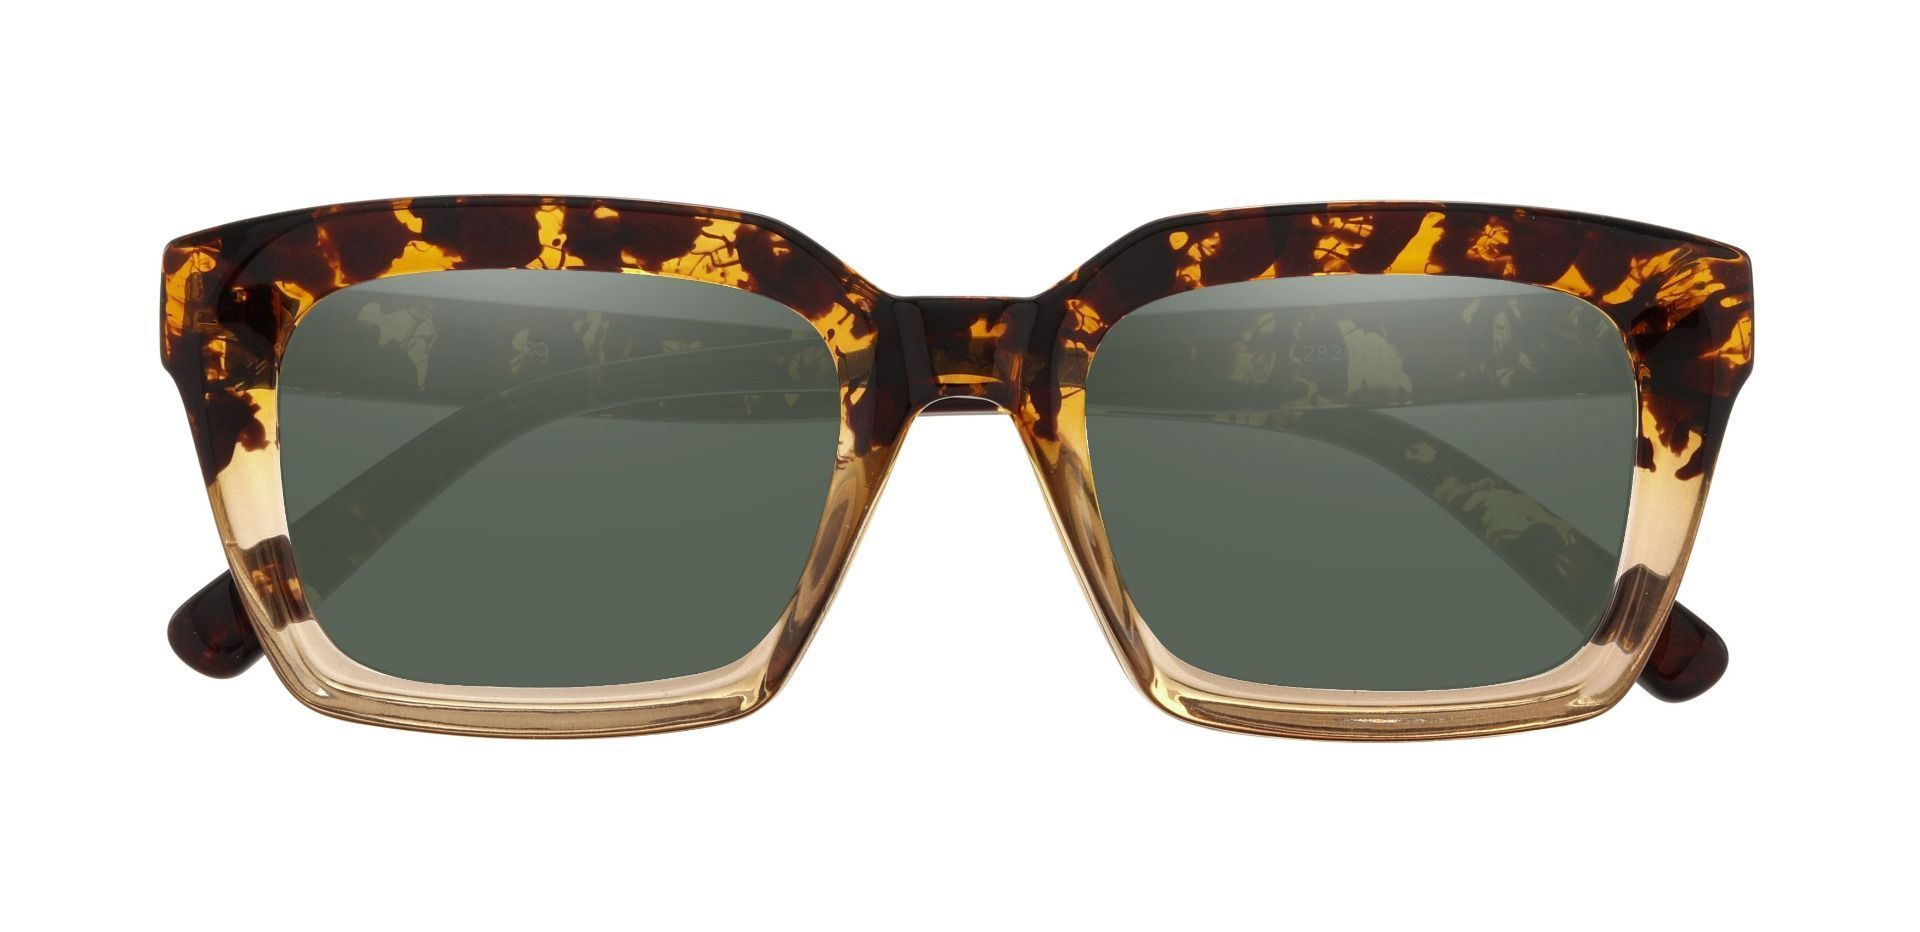 Unity Rectangle Progressive Sunglasses - Tortoise Frame With Green Lenses